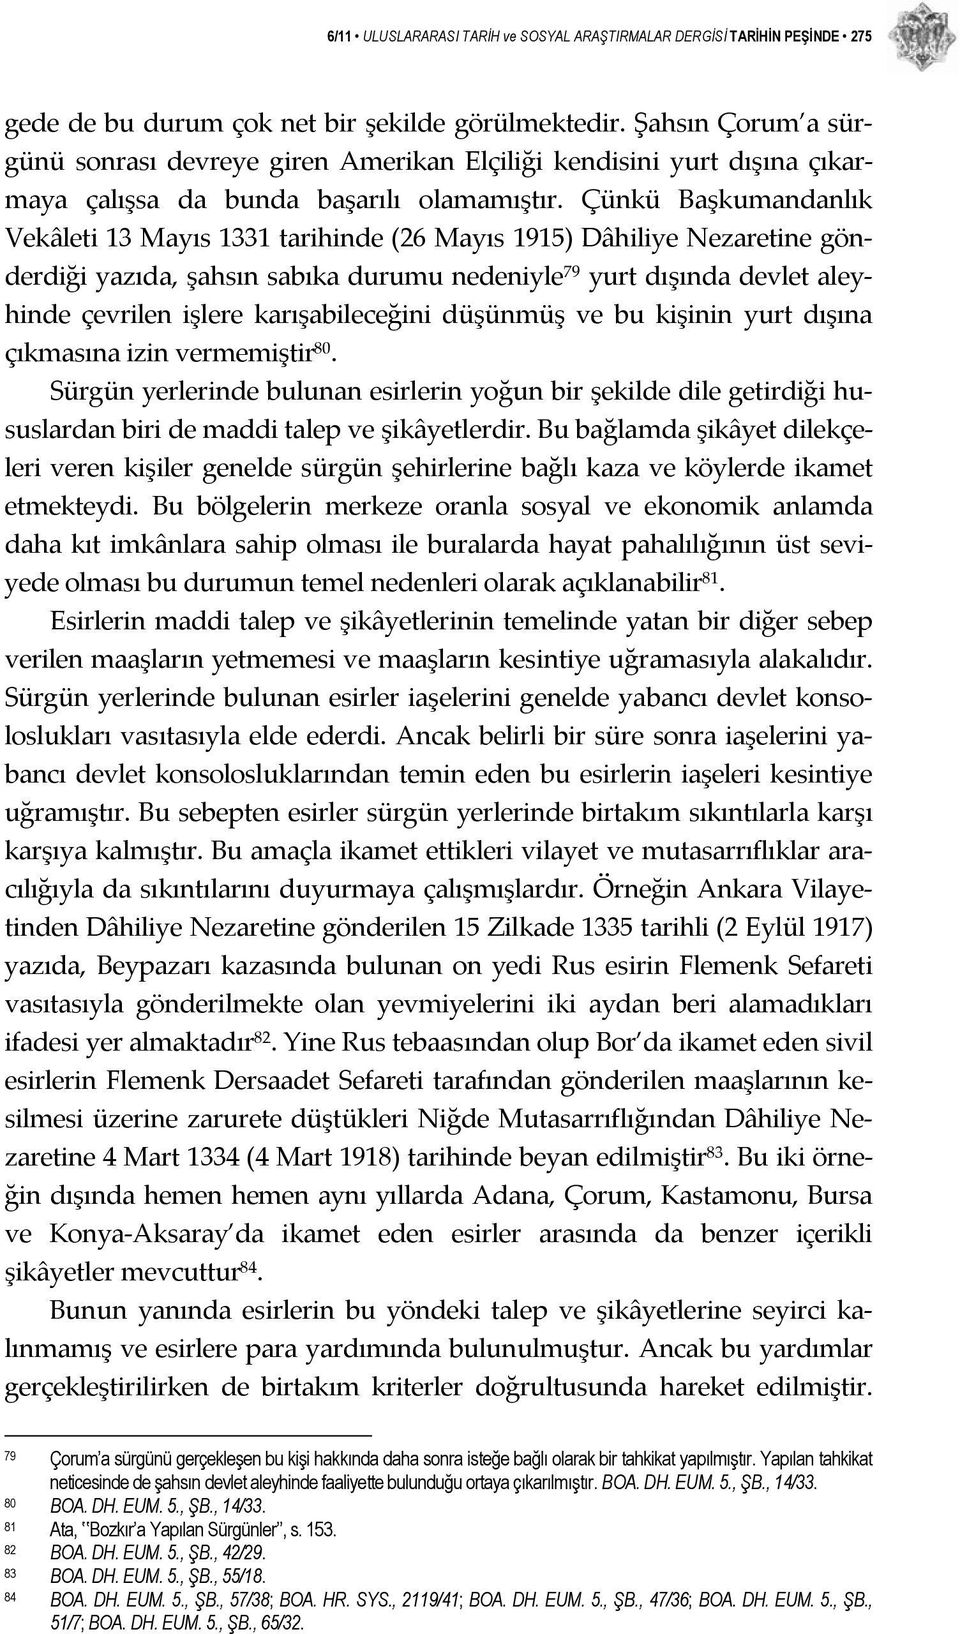 Çünkü Başkumandanlık Vekâleti 13 Mayıs 1331 tarihinde (26 Mayıs 1915) Dâhiliye Nezaretine gönderdiği yazıda, şahsın sabıka durumu nedeniyle 79 yurt dışında devlet aleyhinde çevrilen işlere